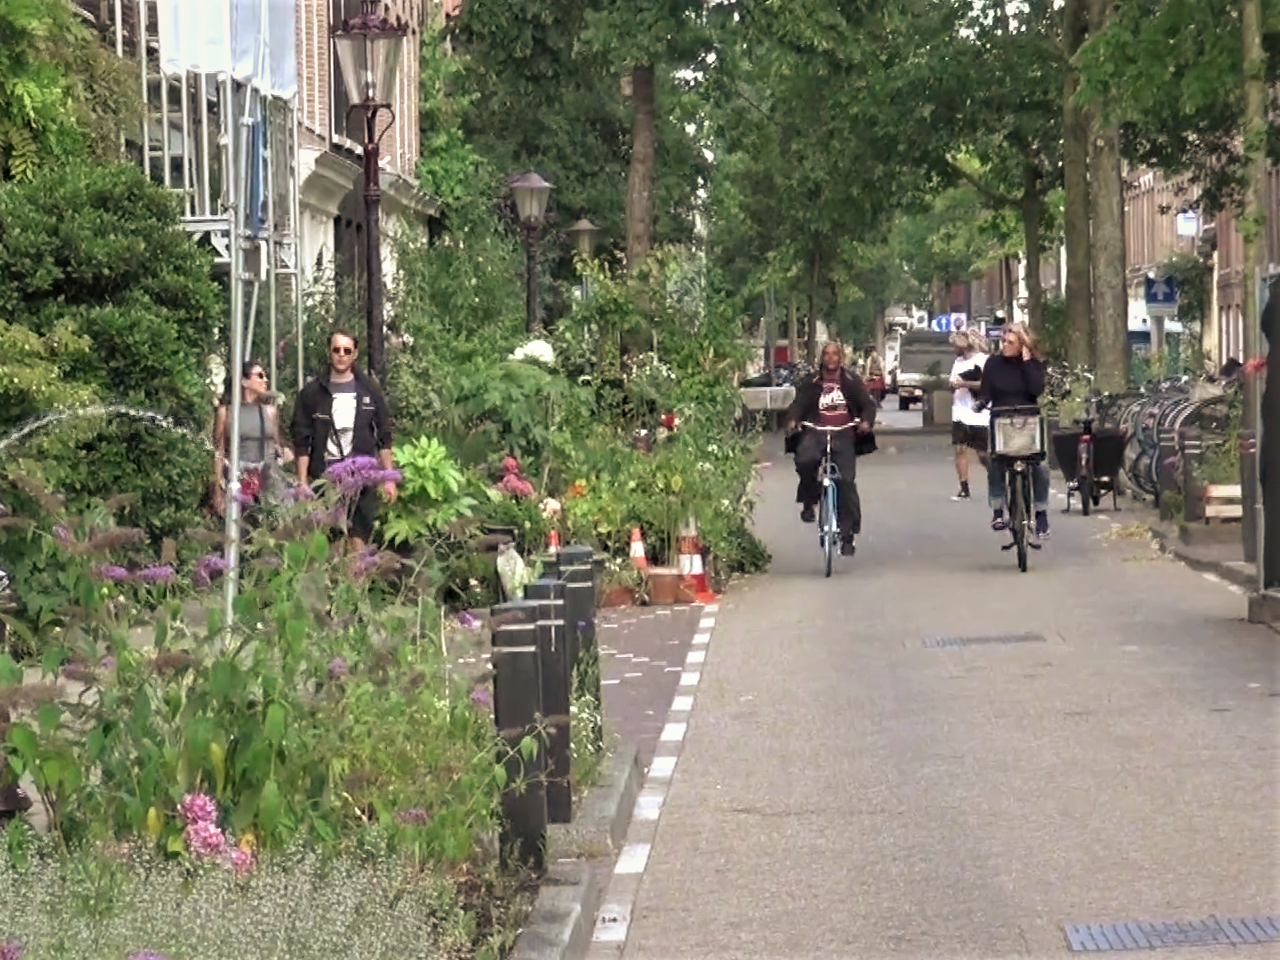 Das Viertel Frans Halsbuurt in Amsterdam wurde unter Beteiligung der Anwohner:innen in eine begrünte und parkfreie Nachbarschaft umgewandelt. Foto: ©Streetfilms